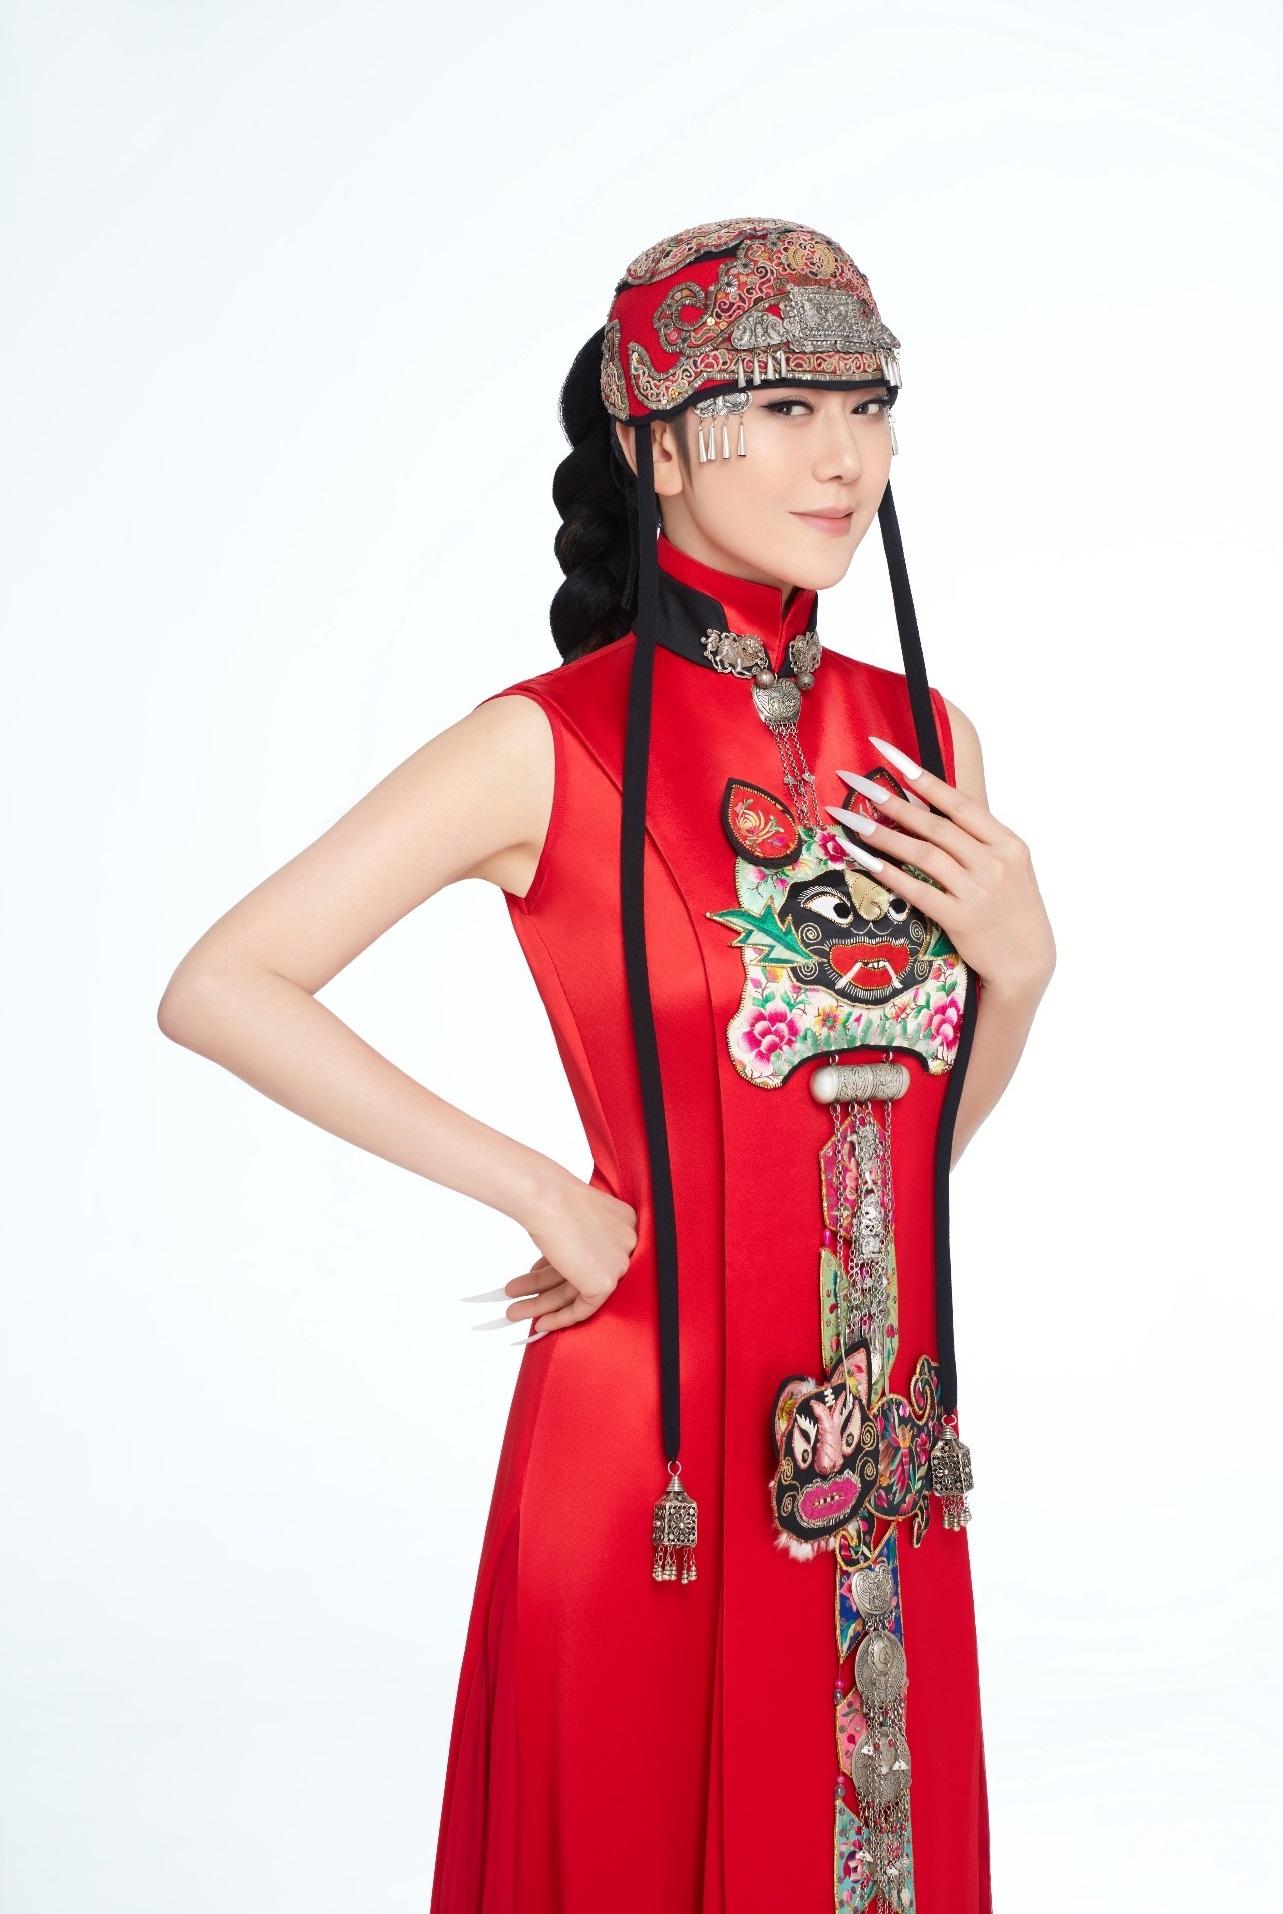 康乐及文化事务署十二月呈献「谭盾WE-音乐节」。图为舞蹈家杨丽萍。